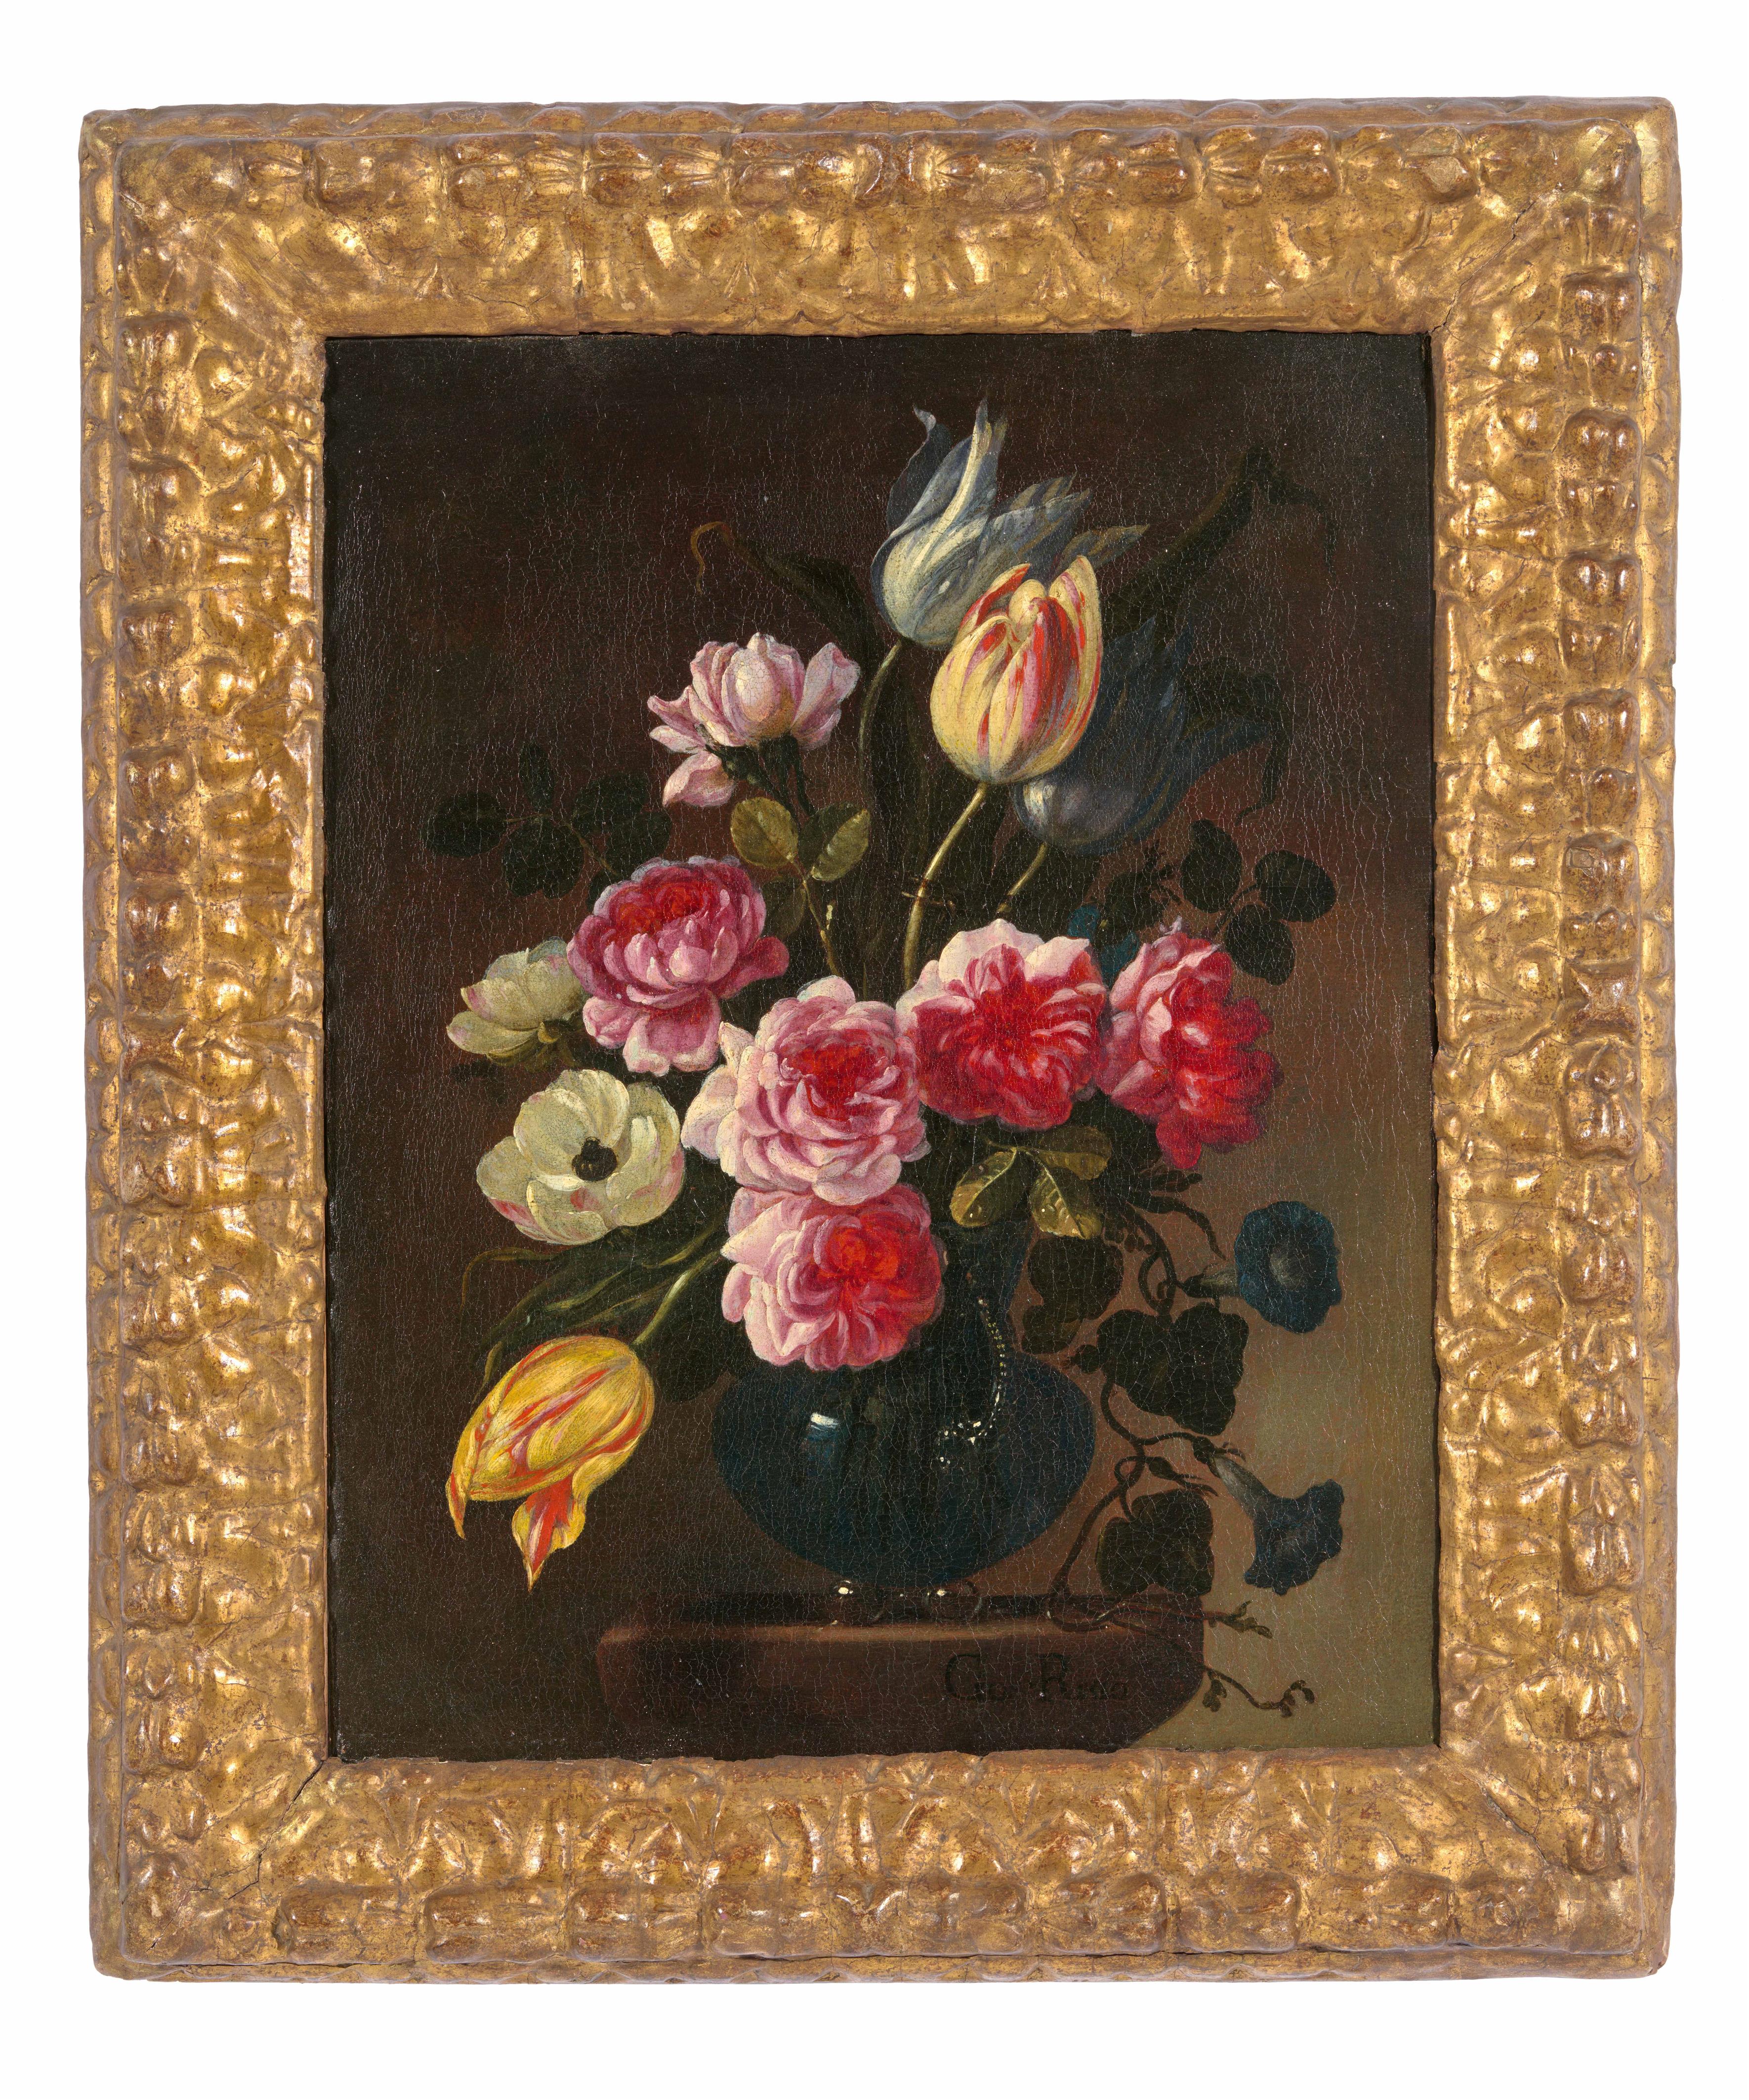 Giuseppe Recco - Blumenvase mit Anemonen und Tulpen
Blumenvase mit Rosen und Tulpen - image-1